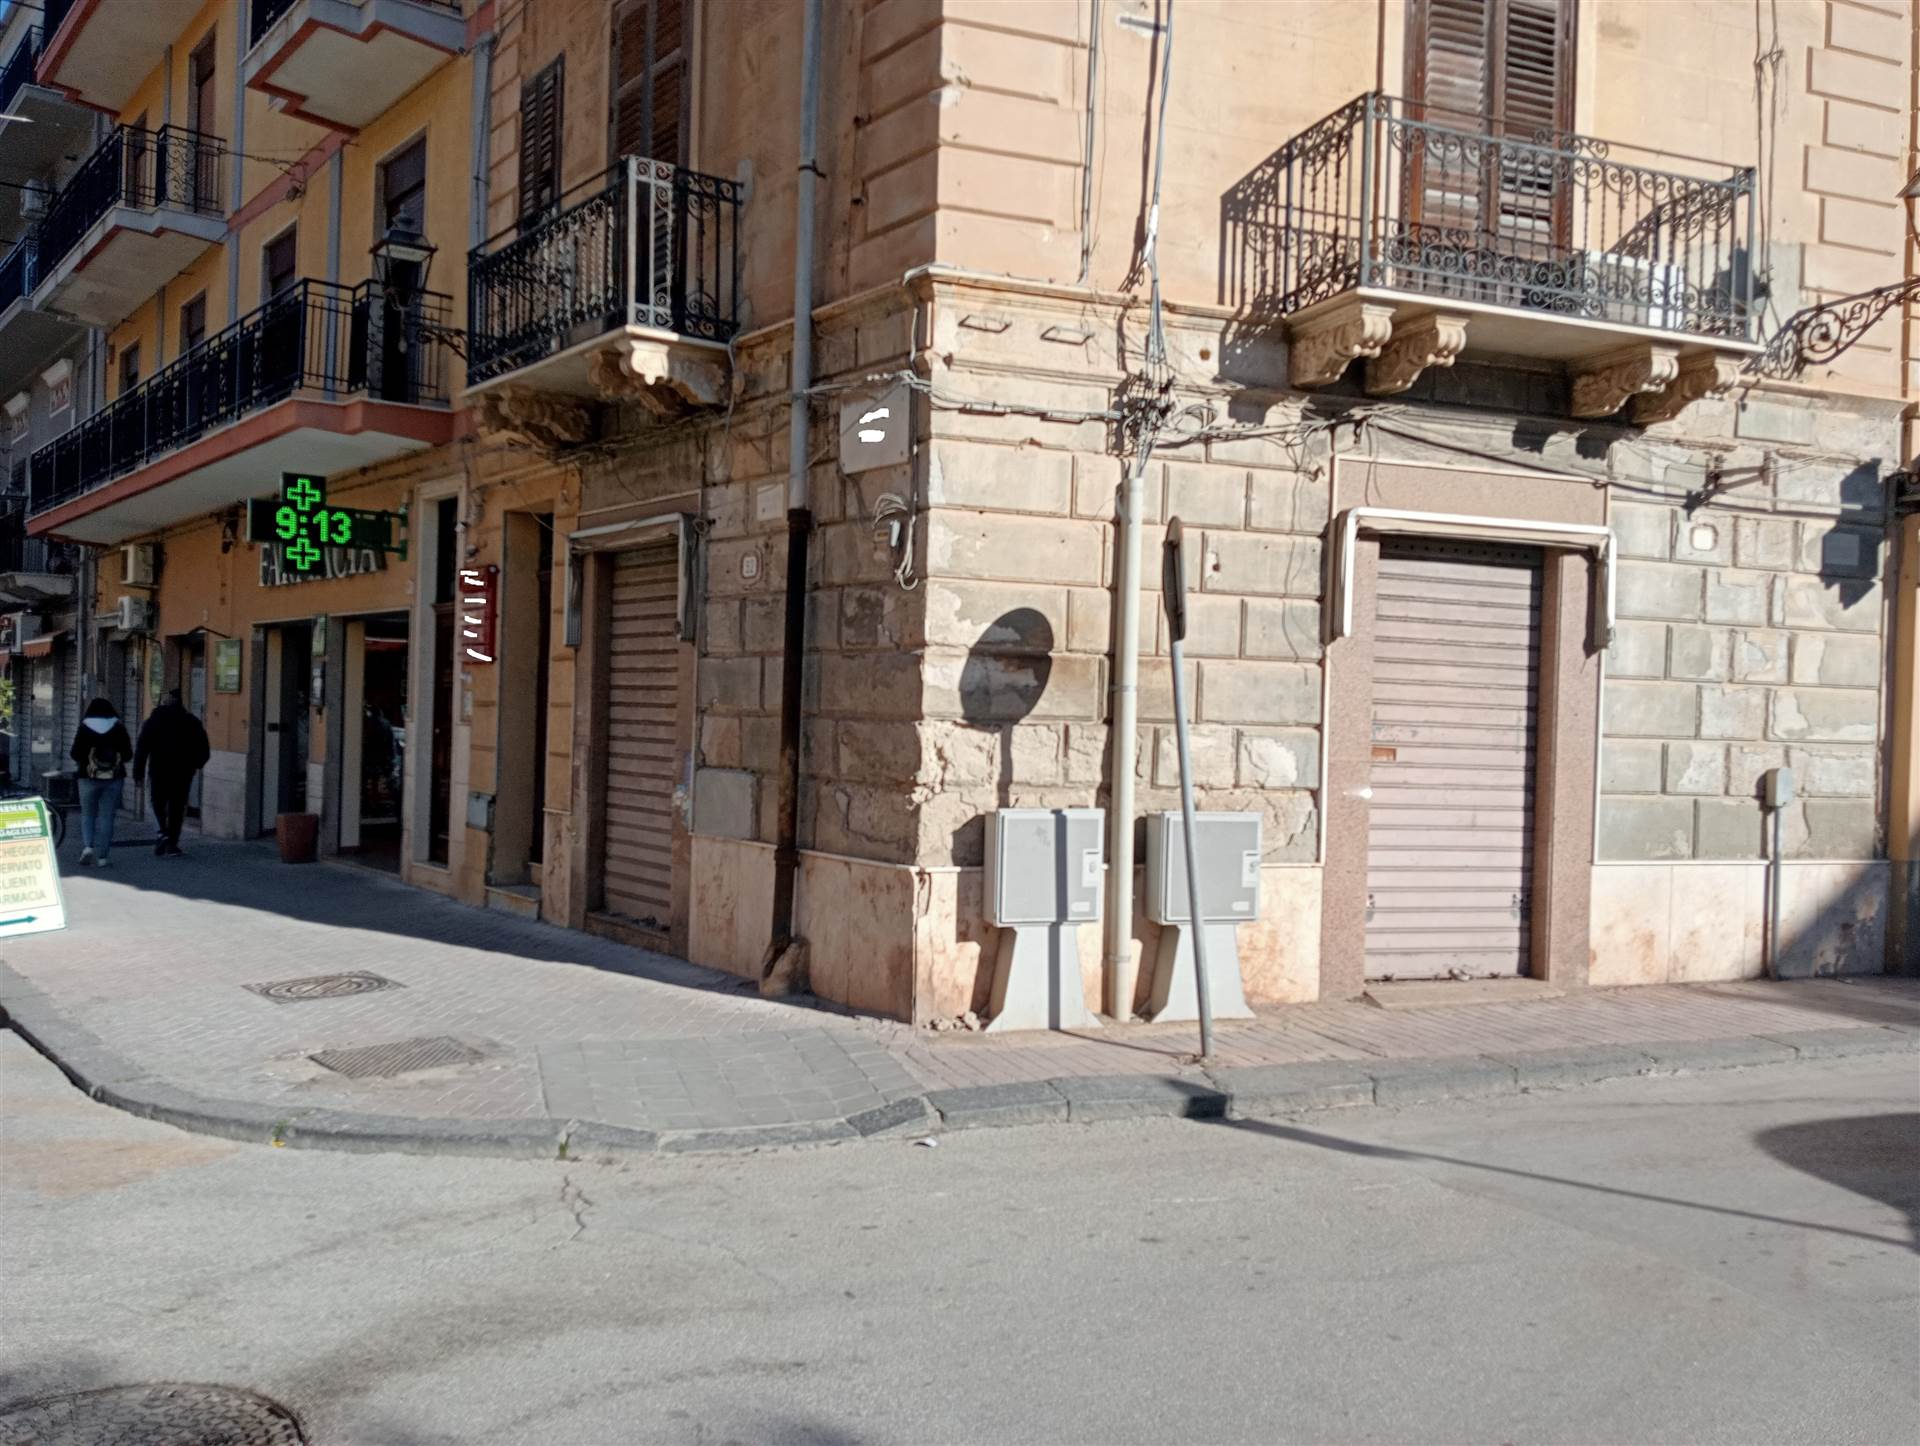 Immobile Commerciale in vendita a Licata, 1 locali, zona Località: CENTRO, prezzo € 37.000 | PortaleAgenzieImmobiliari.it